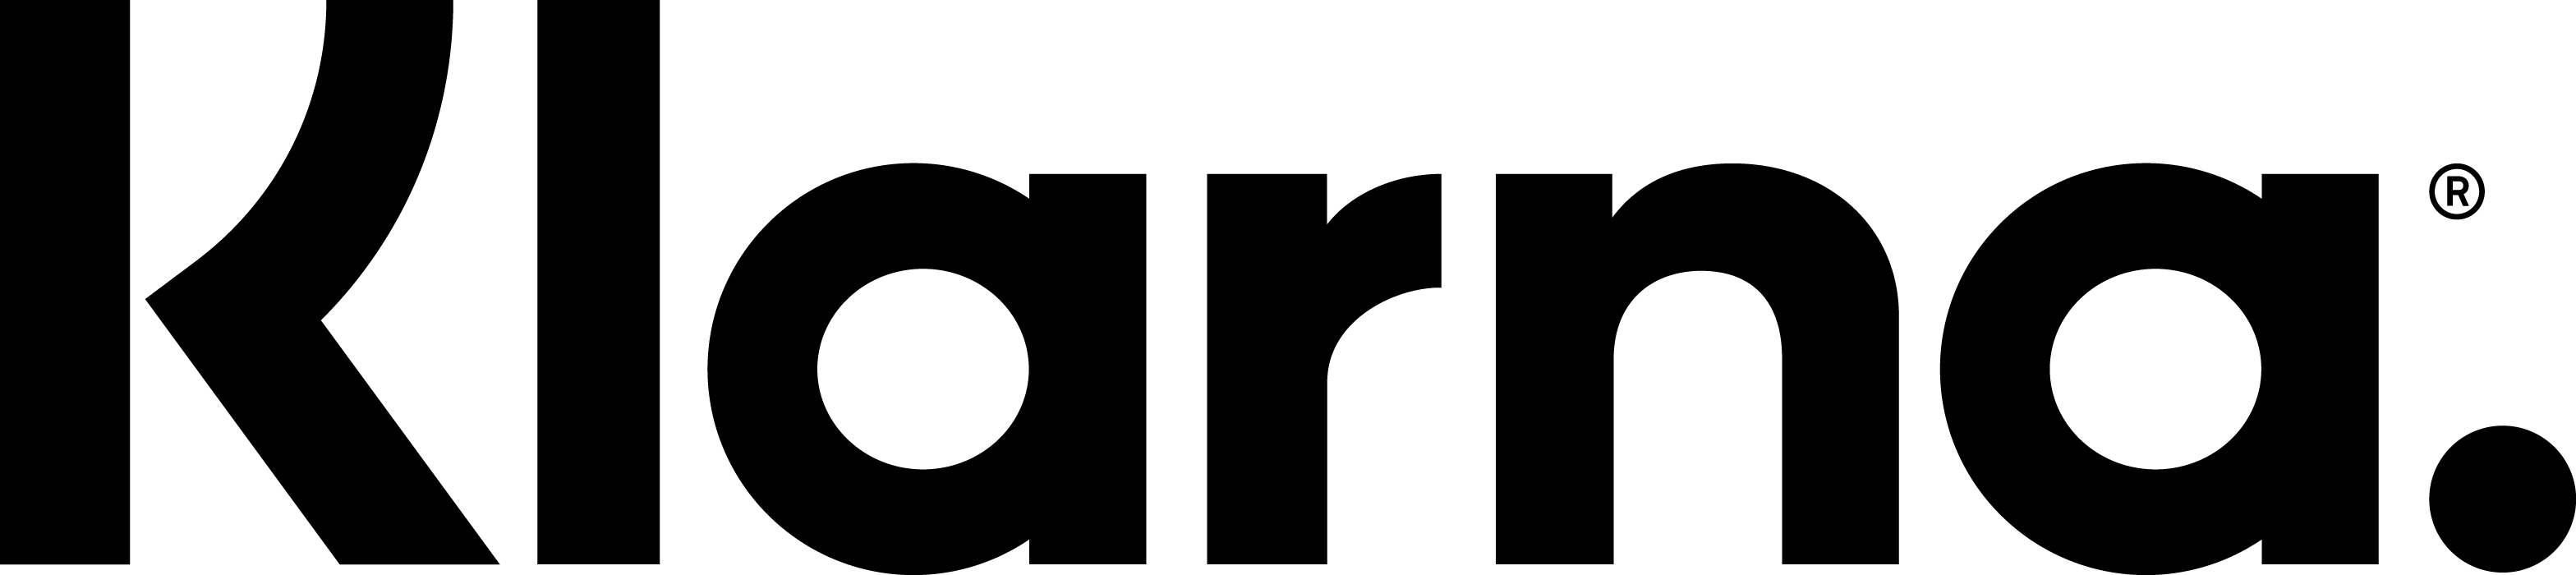 klarna-logo-black.png